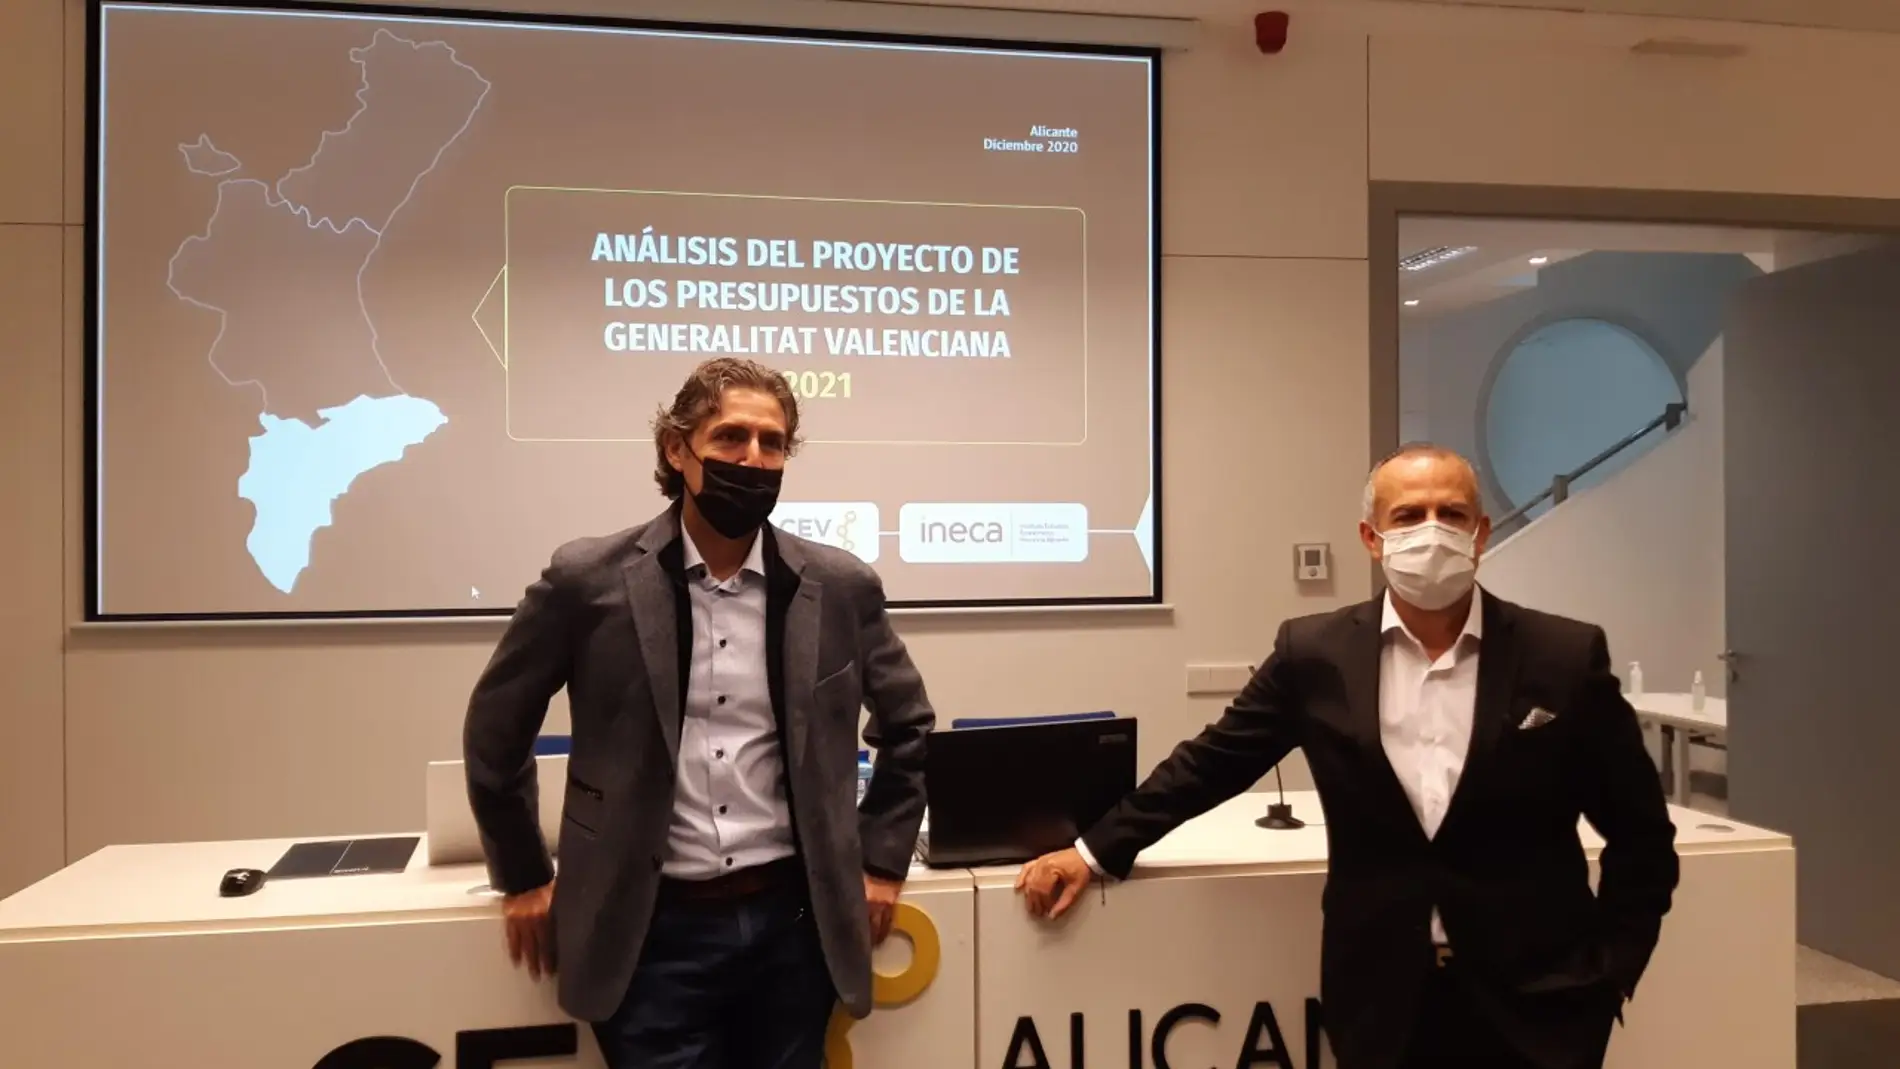 Rafael Ballester y Perfecto Palacio presientes de INECA y CEV-Alicante, respectivamente